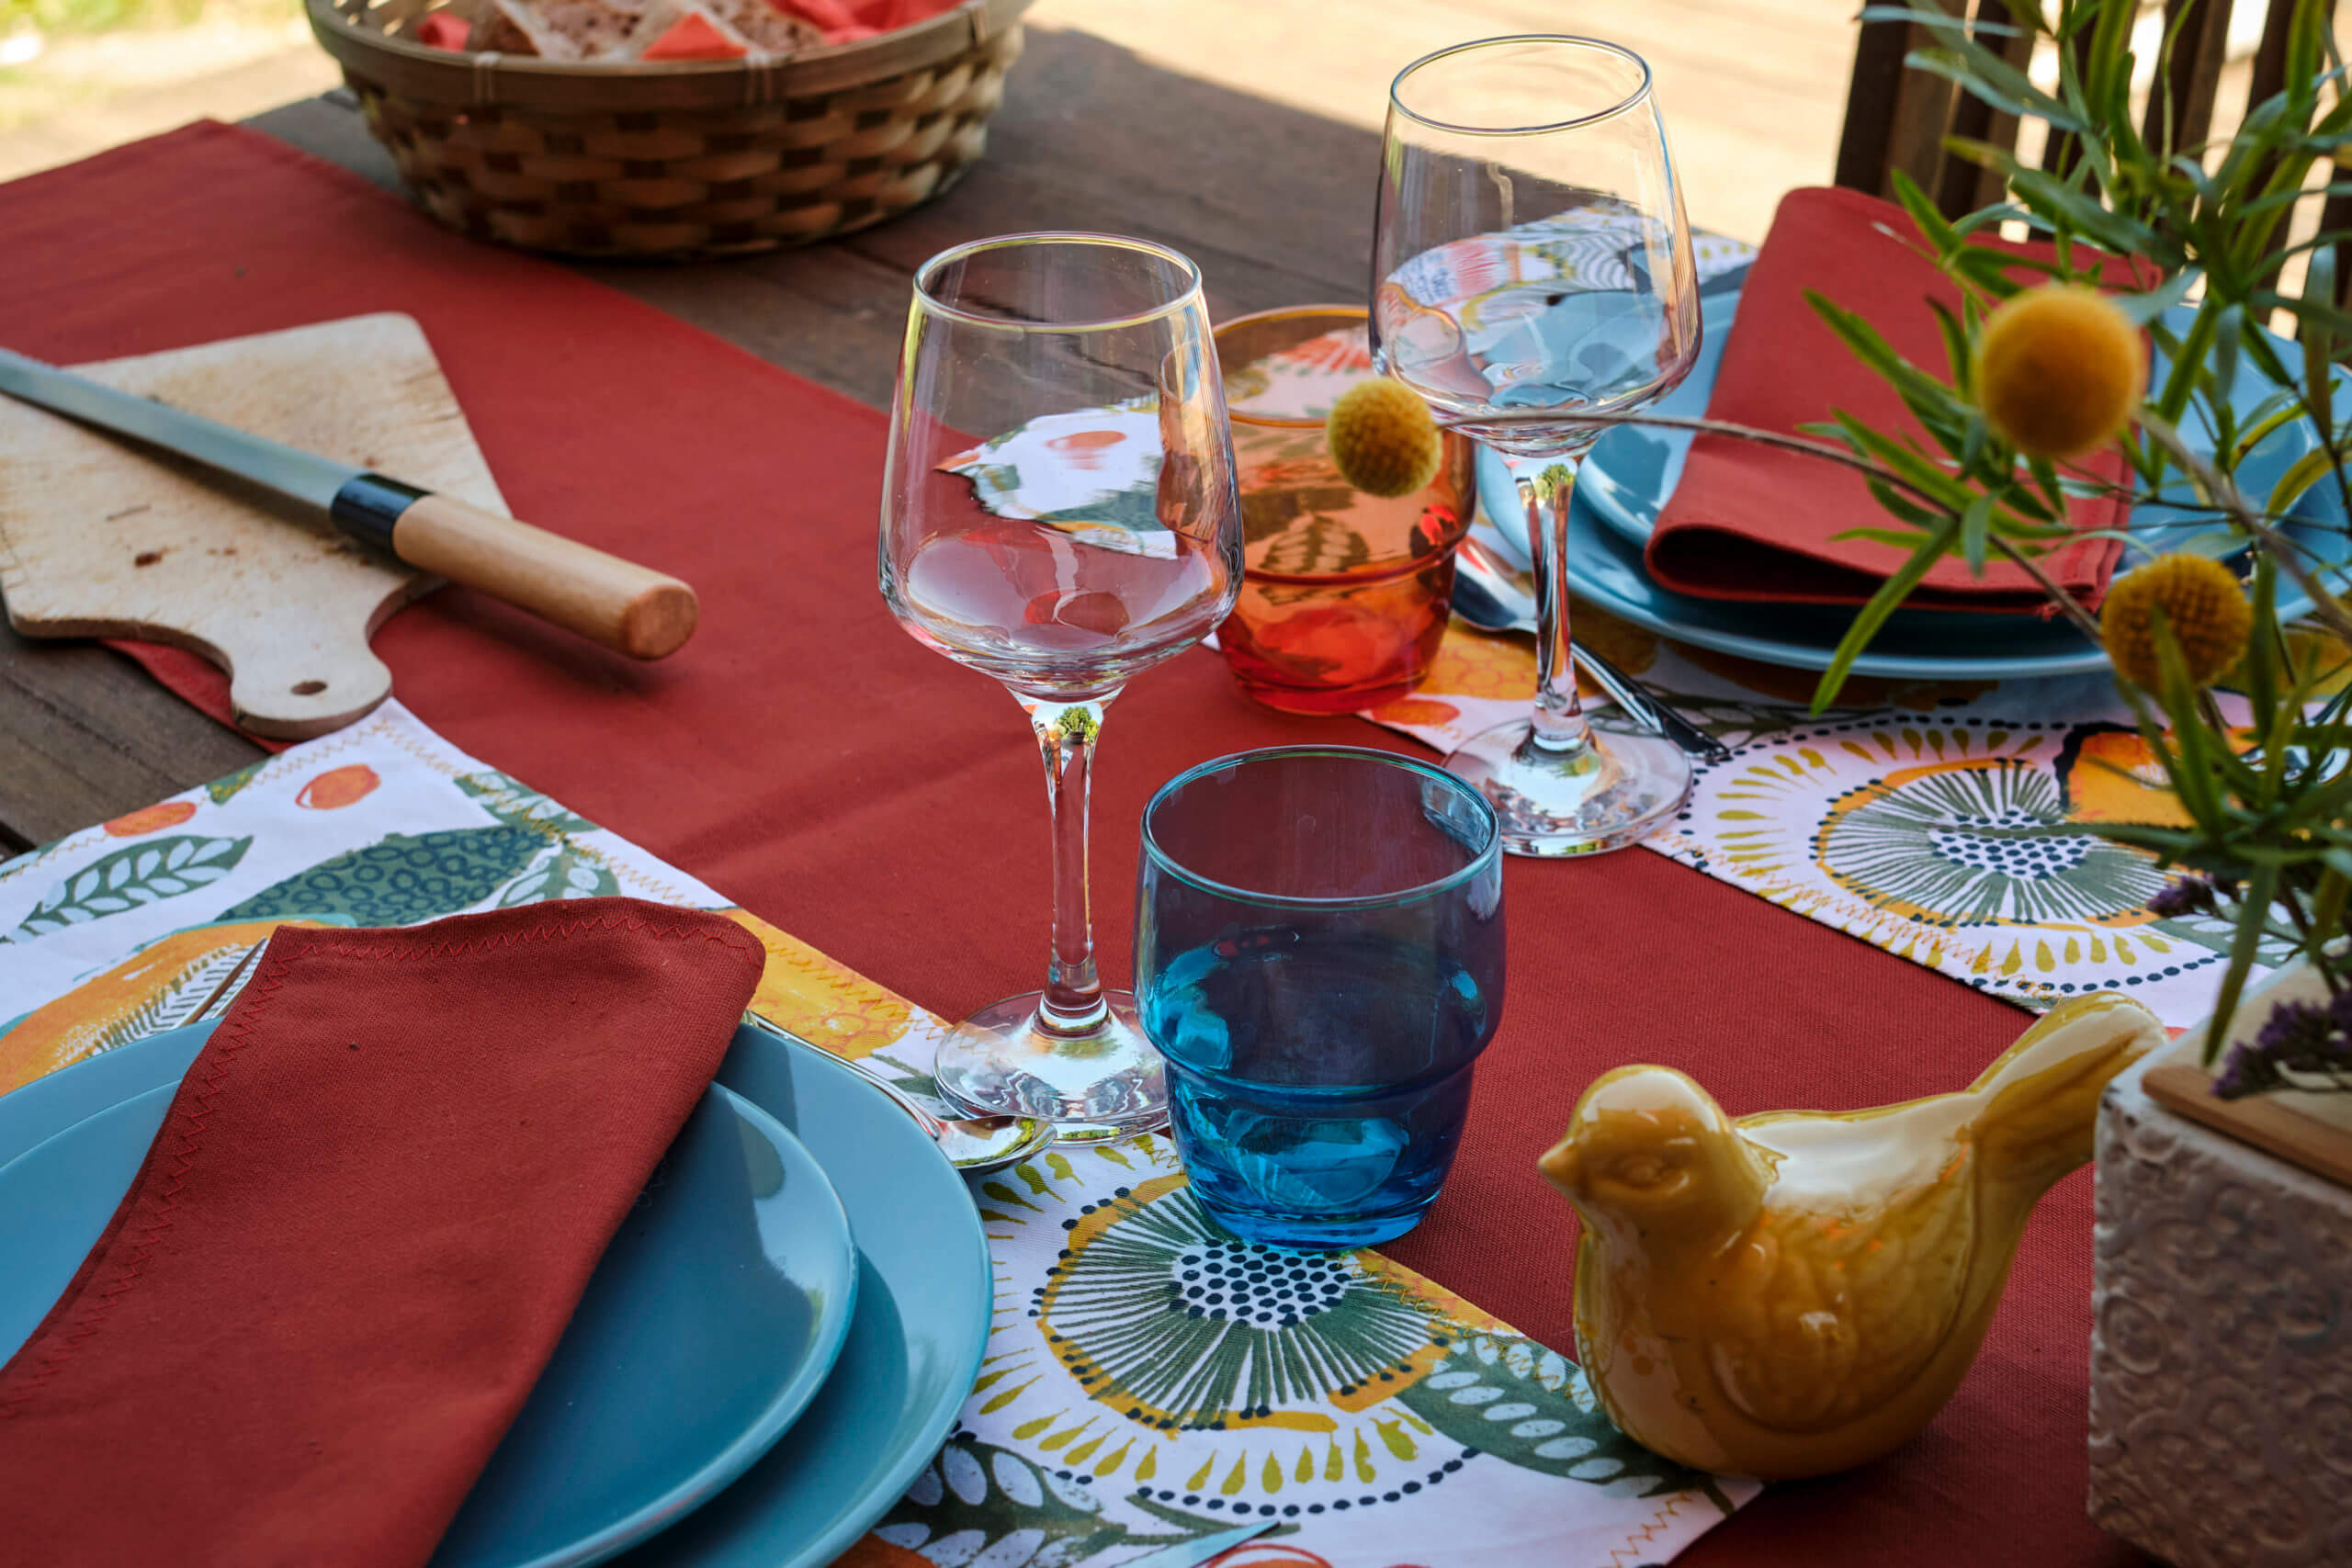 Décoration de table par Georgette MagritteS : chemin de table rouge, assiettes bleues, verres à vin, dessous de plats colorés, planche à pain, chardons, etc.